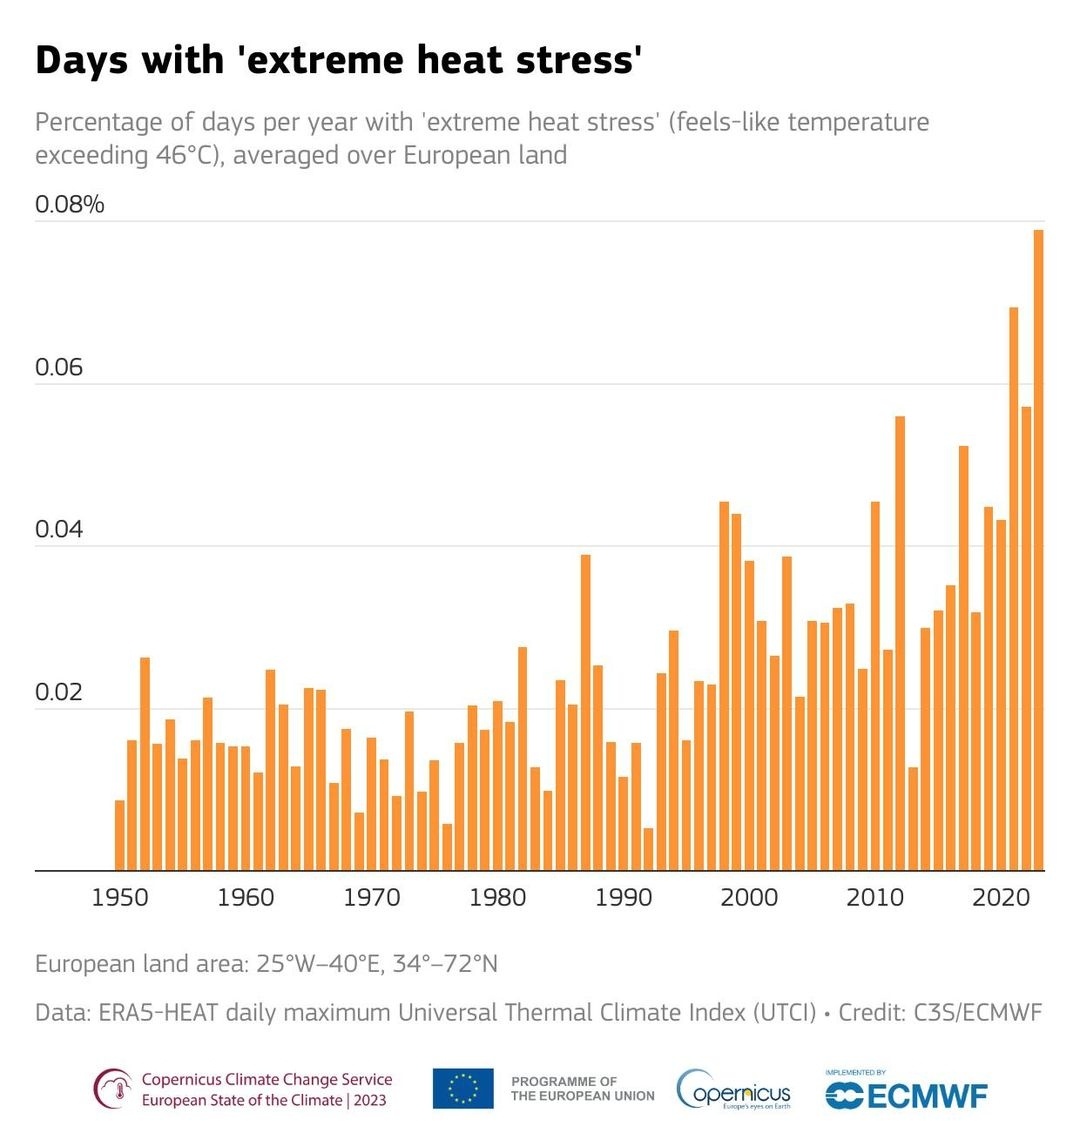 Avrupa İklim Devleti #ESOTC raporu yayınlandı 2023 yılı Avrupa'da aşırı ısı stresi ile rekor düzeyde gün sayılarına ulaştı.
Aşırı sıcaklar 1970 lerden bu yana belirgin seviyede artış gösterdi ve Avrupa'da hava ve iklime bağlı ölümlerin en büyük nedenleri arasında aşırı ısı stresi